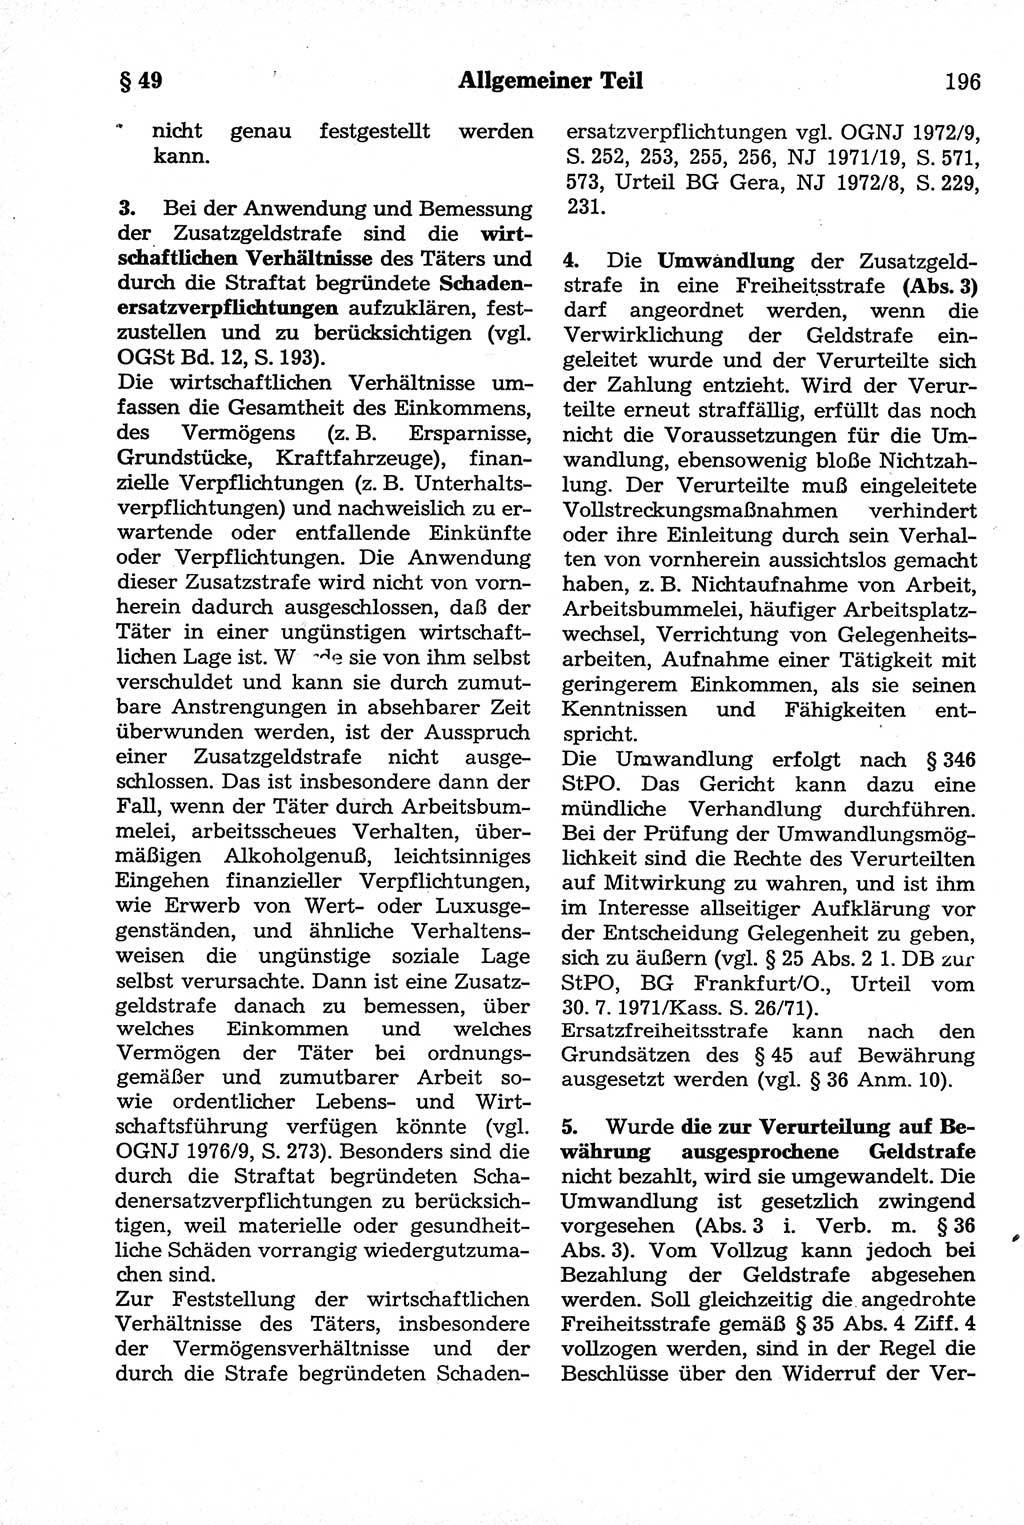 Strafrecht der Deutschen Demokratischen Republik (DDR), Kommentar zum Strafgesetzbuch (StGB) 1981, Seite 196 (Strafr. DDR Komm. StGB 1981, S. 196)